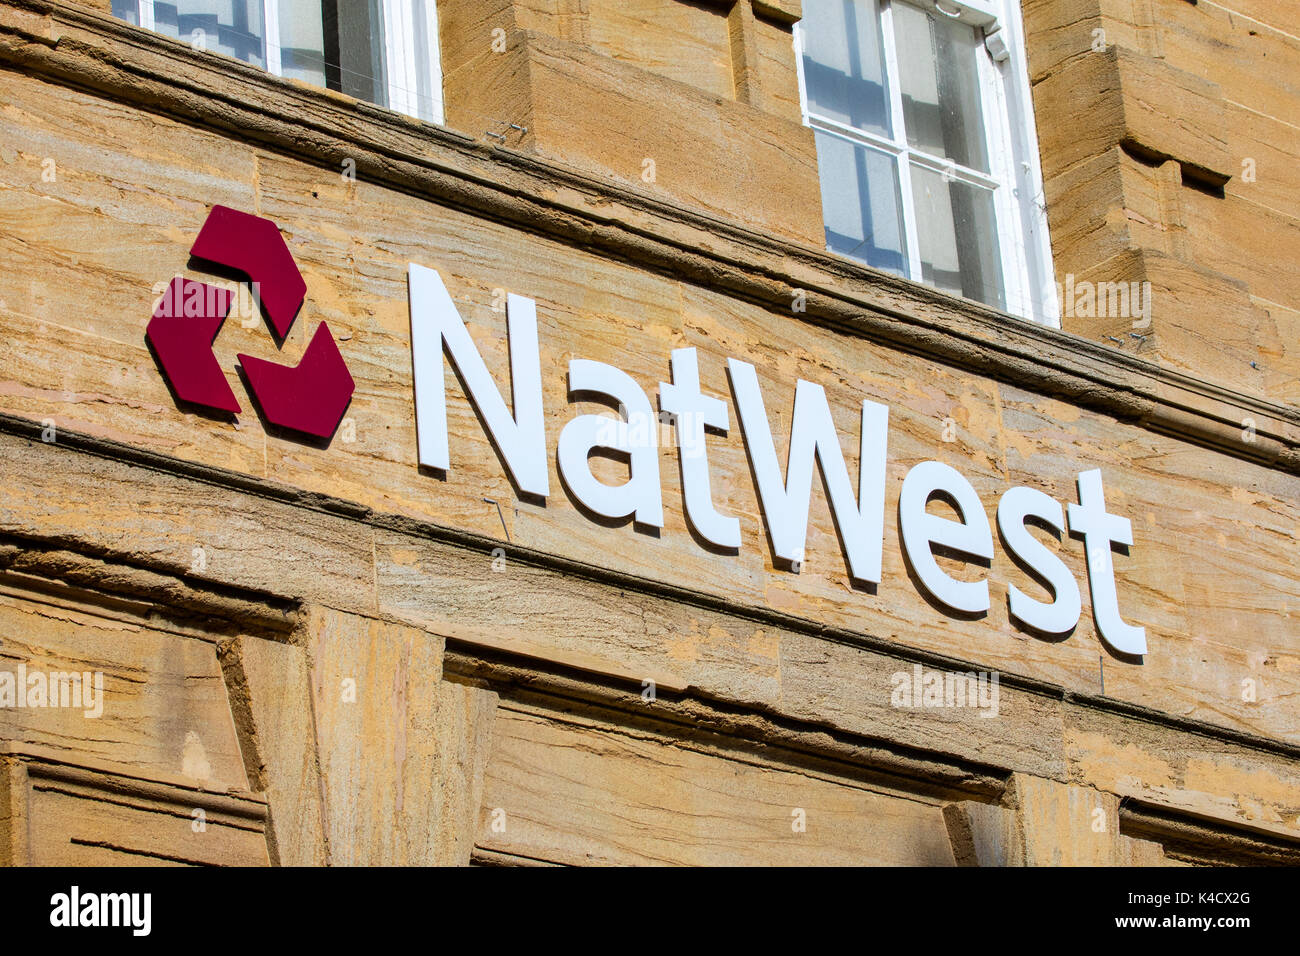 DORCHESTER, Großbritannien - 15. AUGUST 2017: Das Logo über dem Eingang zu einem Natwest Bank Filiale in Dorchester, Großbritannien, am 15. August 2017. Stockfoto